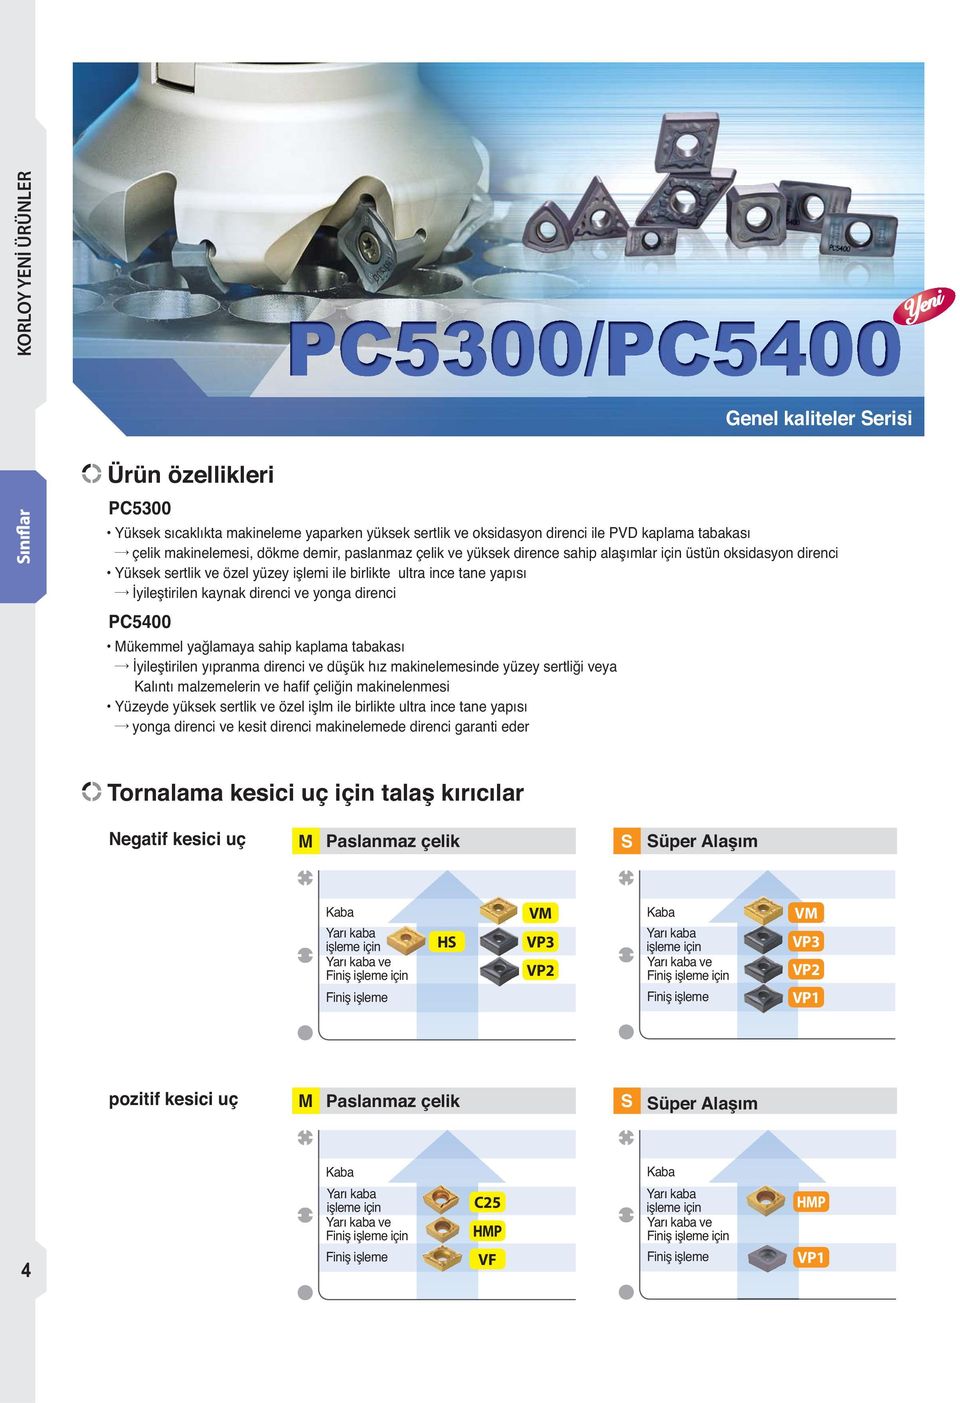 PC5400 Mükemmel yağlamaya sahip kaplama tabakası İyileştirilen yıpranma direnci ve düşük hız makinelemesinde yüzey sertliği veya Kalıntı malzemelerin ve hafif çeliğin makinelenmesi Yüzeyde yüksek